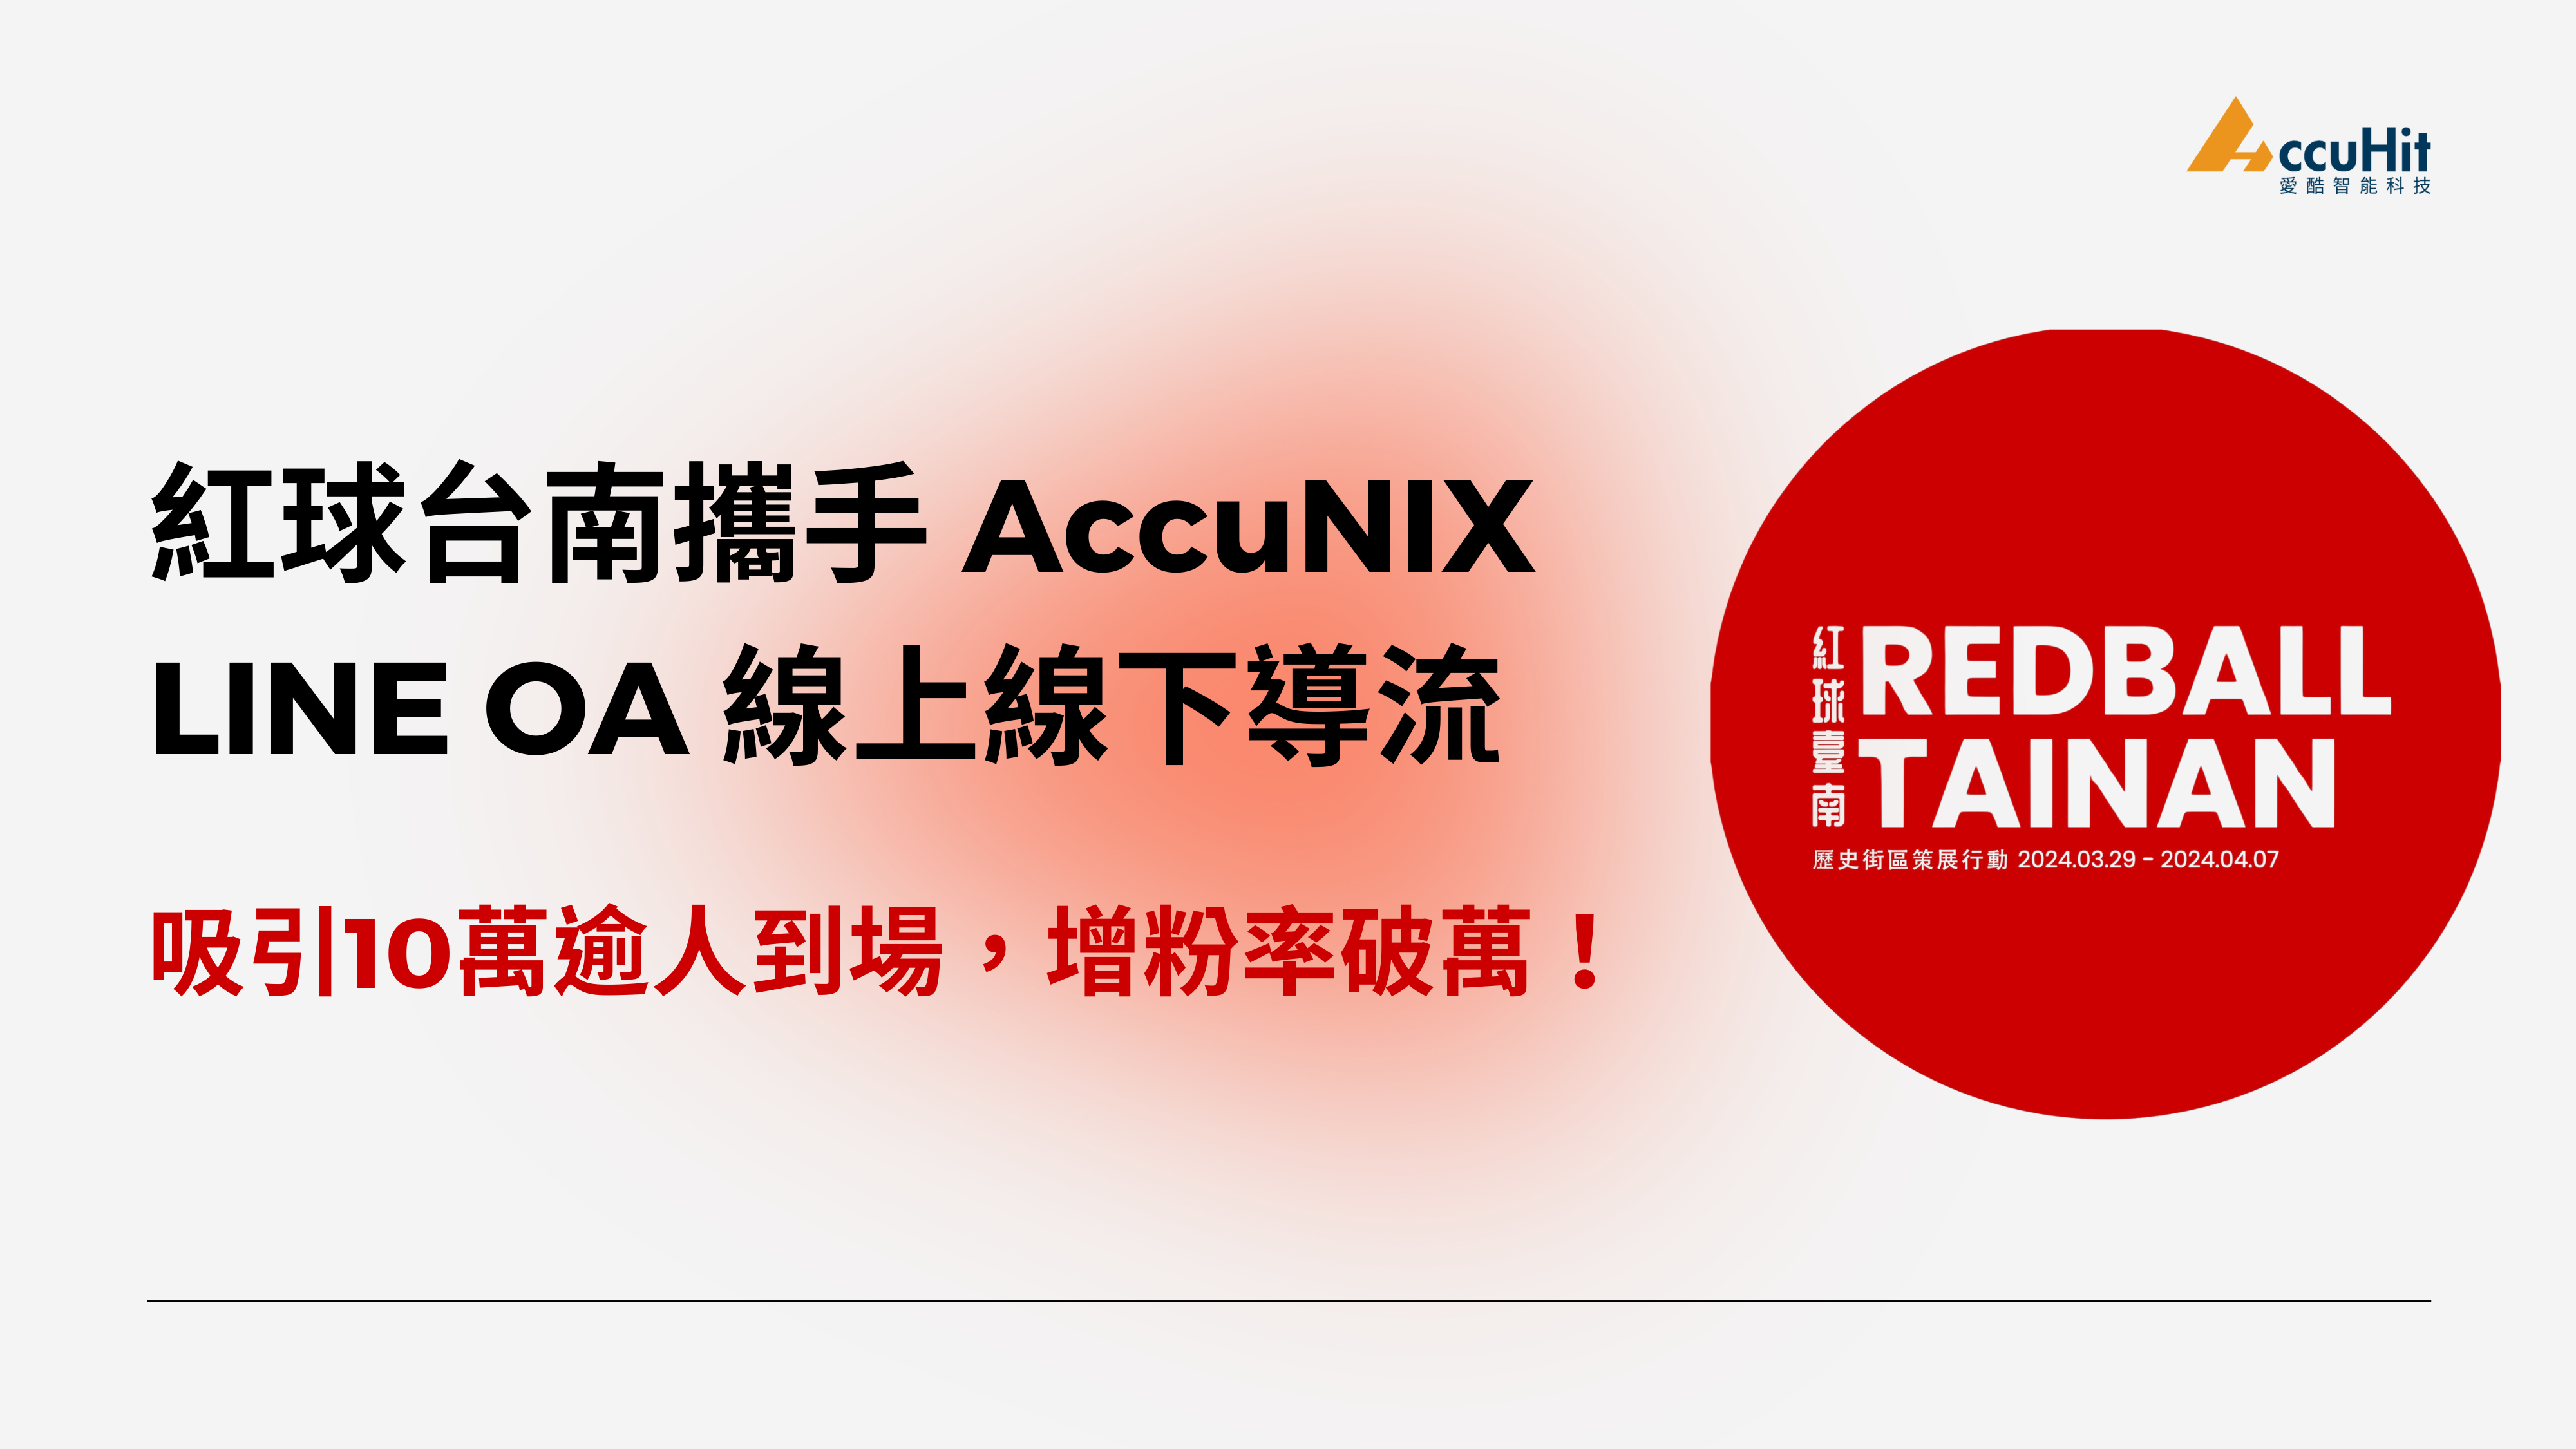 紅球台南計畫攜手AccuNIX，LINE OA線上線下導流，吸引10萬逾人到場，增粉率破萬！